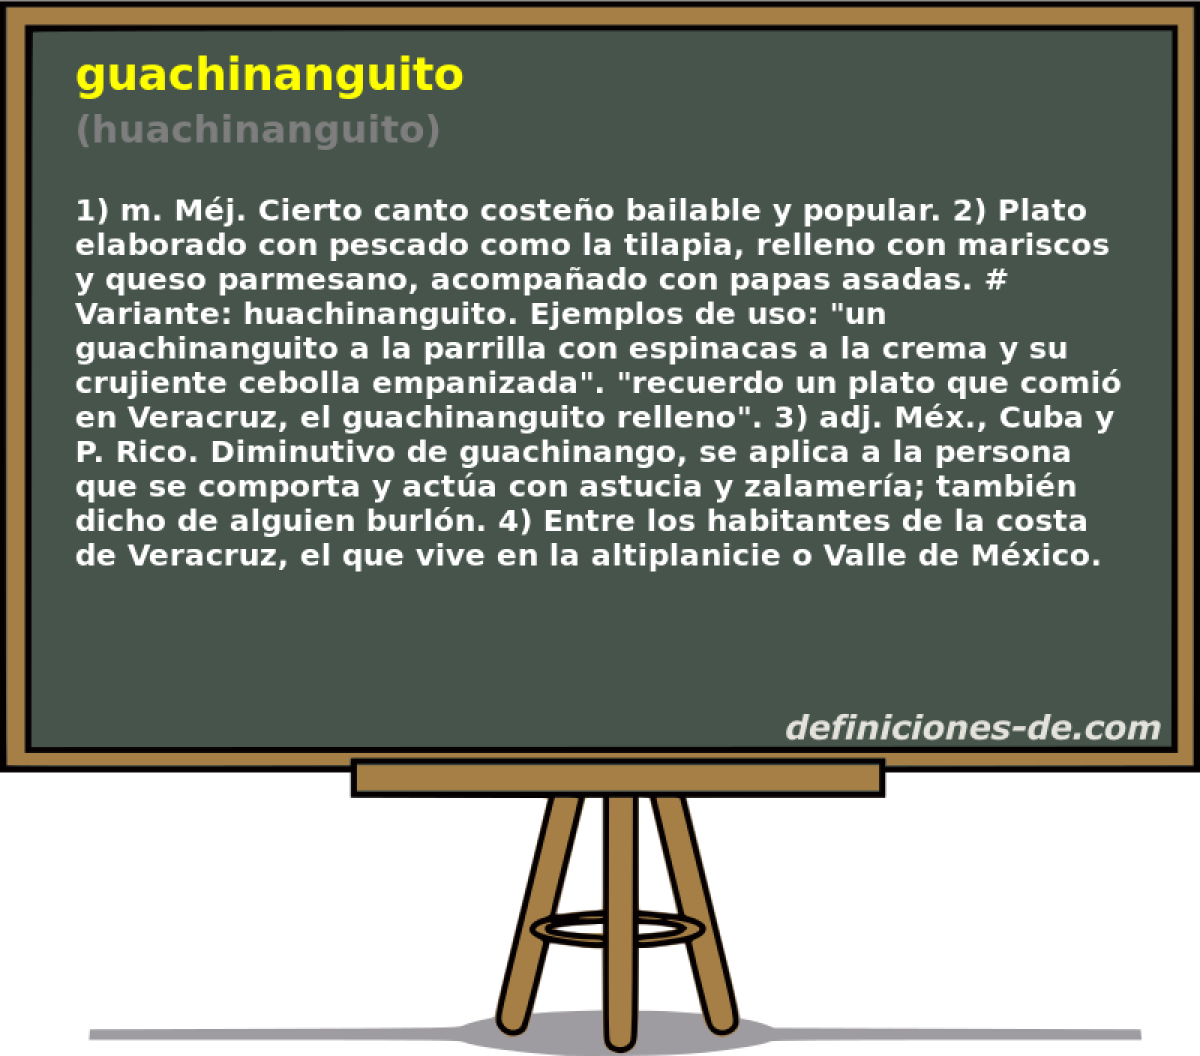 guachinanguito (huachinanguito)